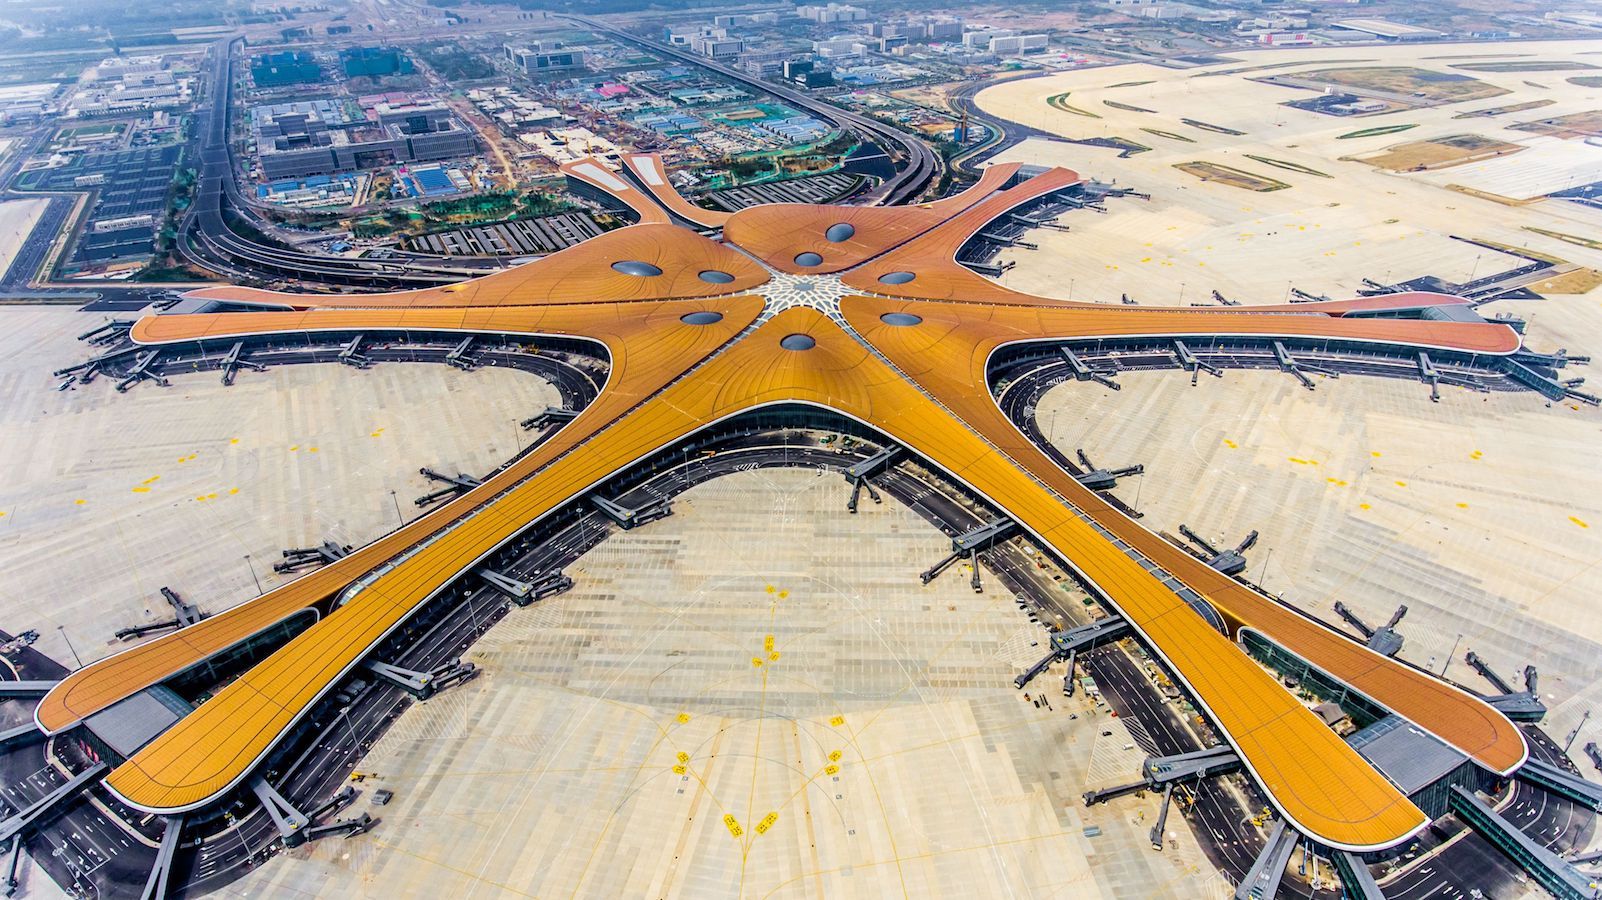 Pekində dünyanın ən böyük beynəlxalq hava limanı açılıb